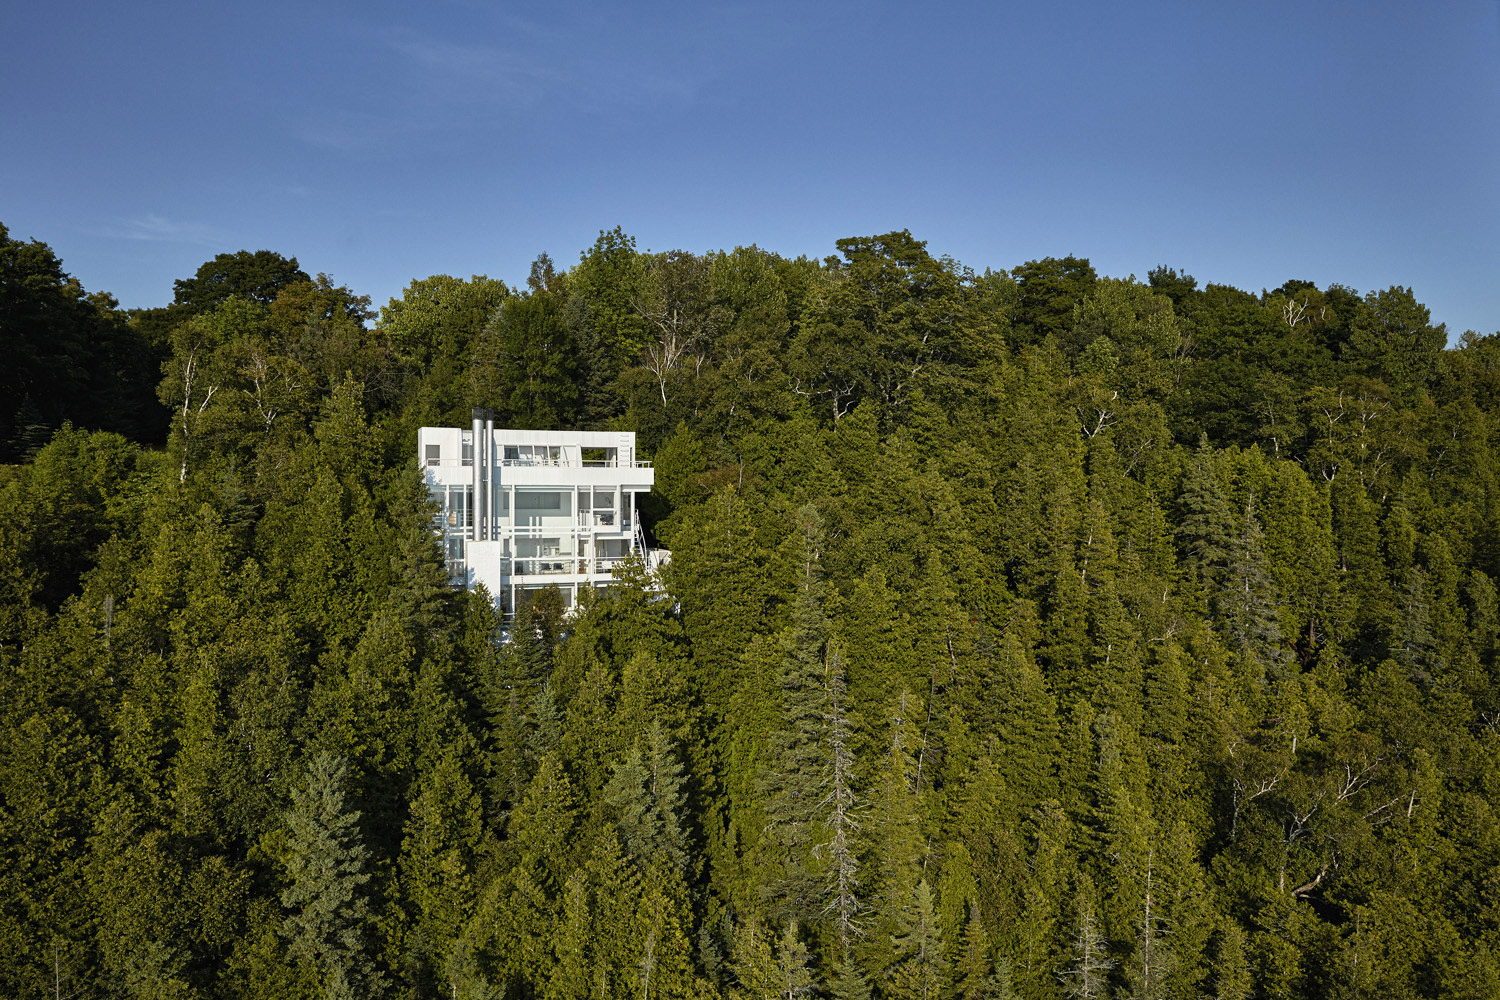 Douglas House | Modern White House by Richard Meier